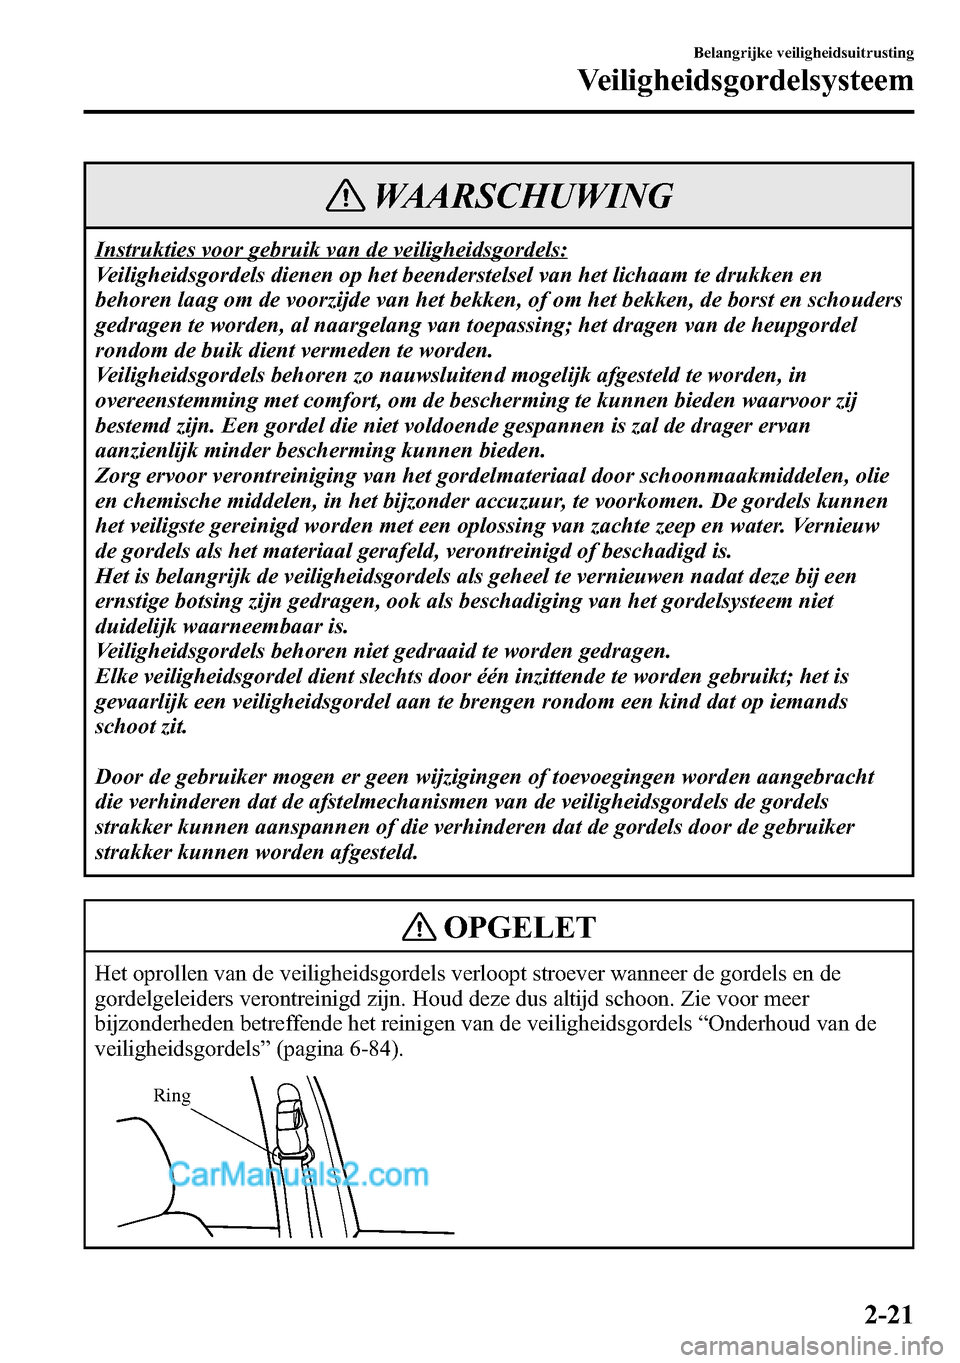 MAZDA MODEL CX-5 2016  Handleiding (in Dutch) WAARSCHUWING
Instrukties voor gebruik van de veiligheidsgordels:
Veiligheidsgordels dienen op het beenderstelsel van het lichaam te drukken en
behoren laag om de voorzijde van het bekken, of om het be